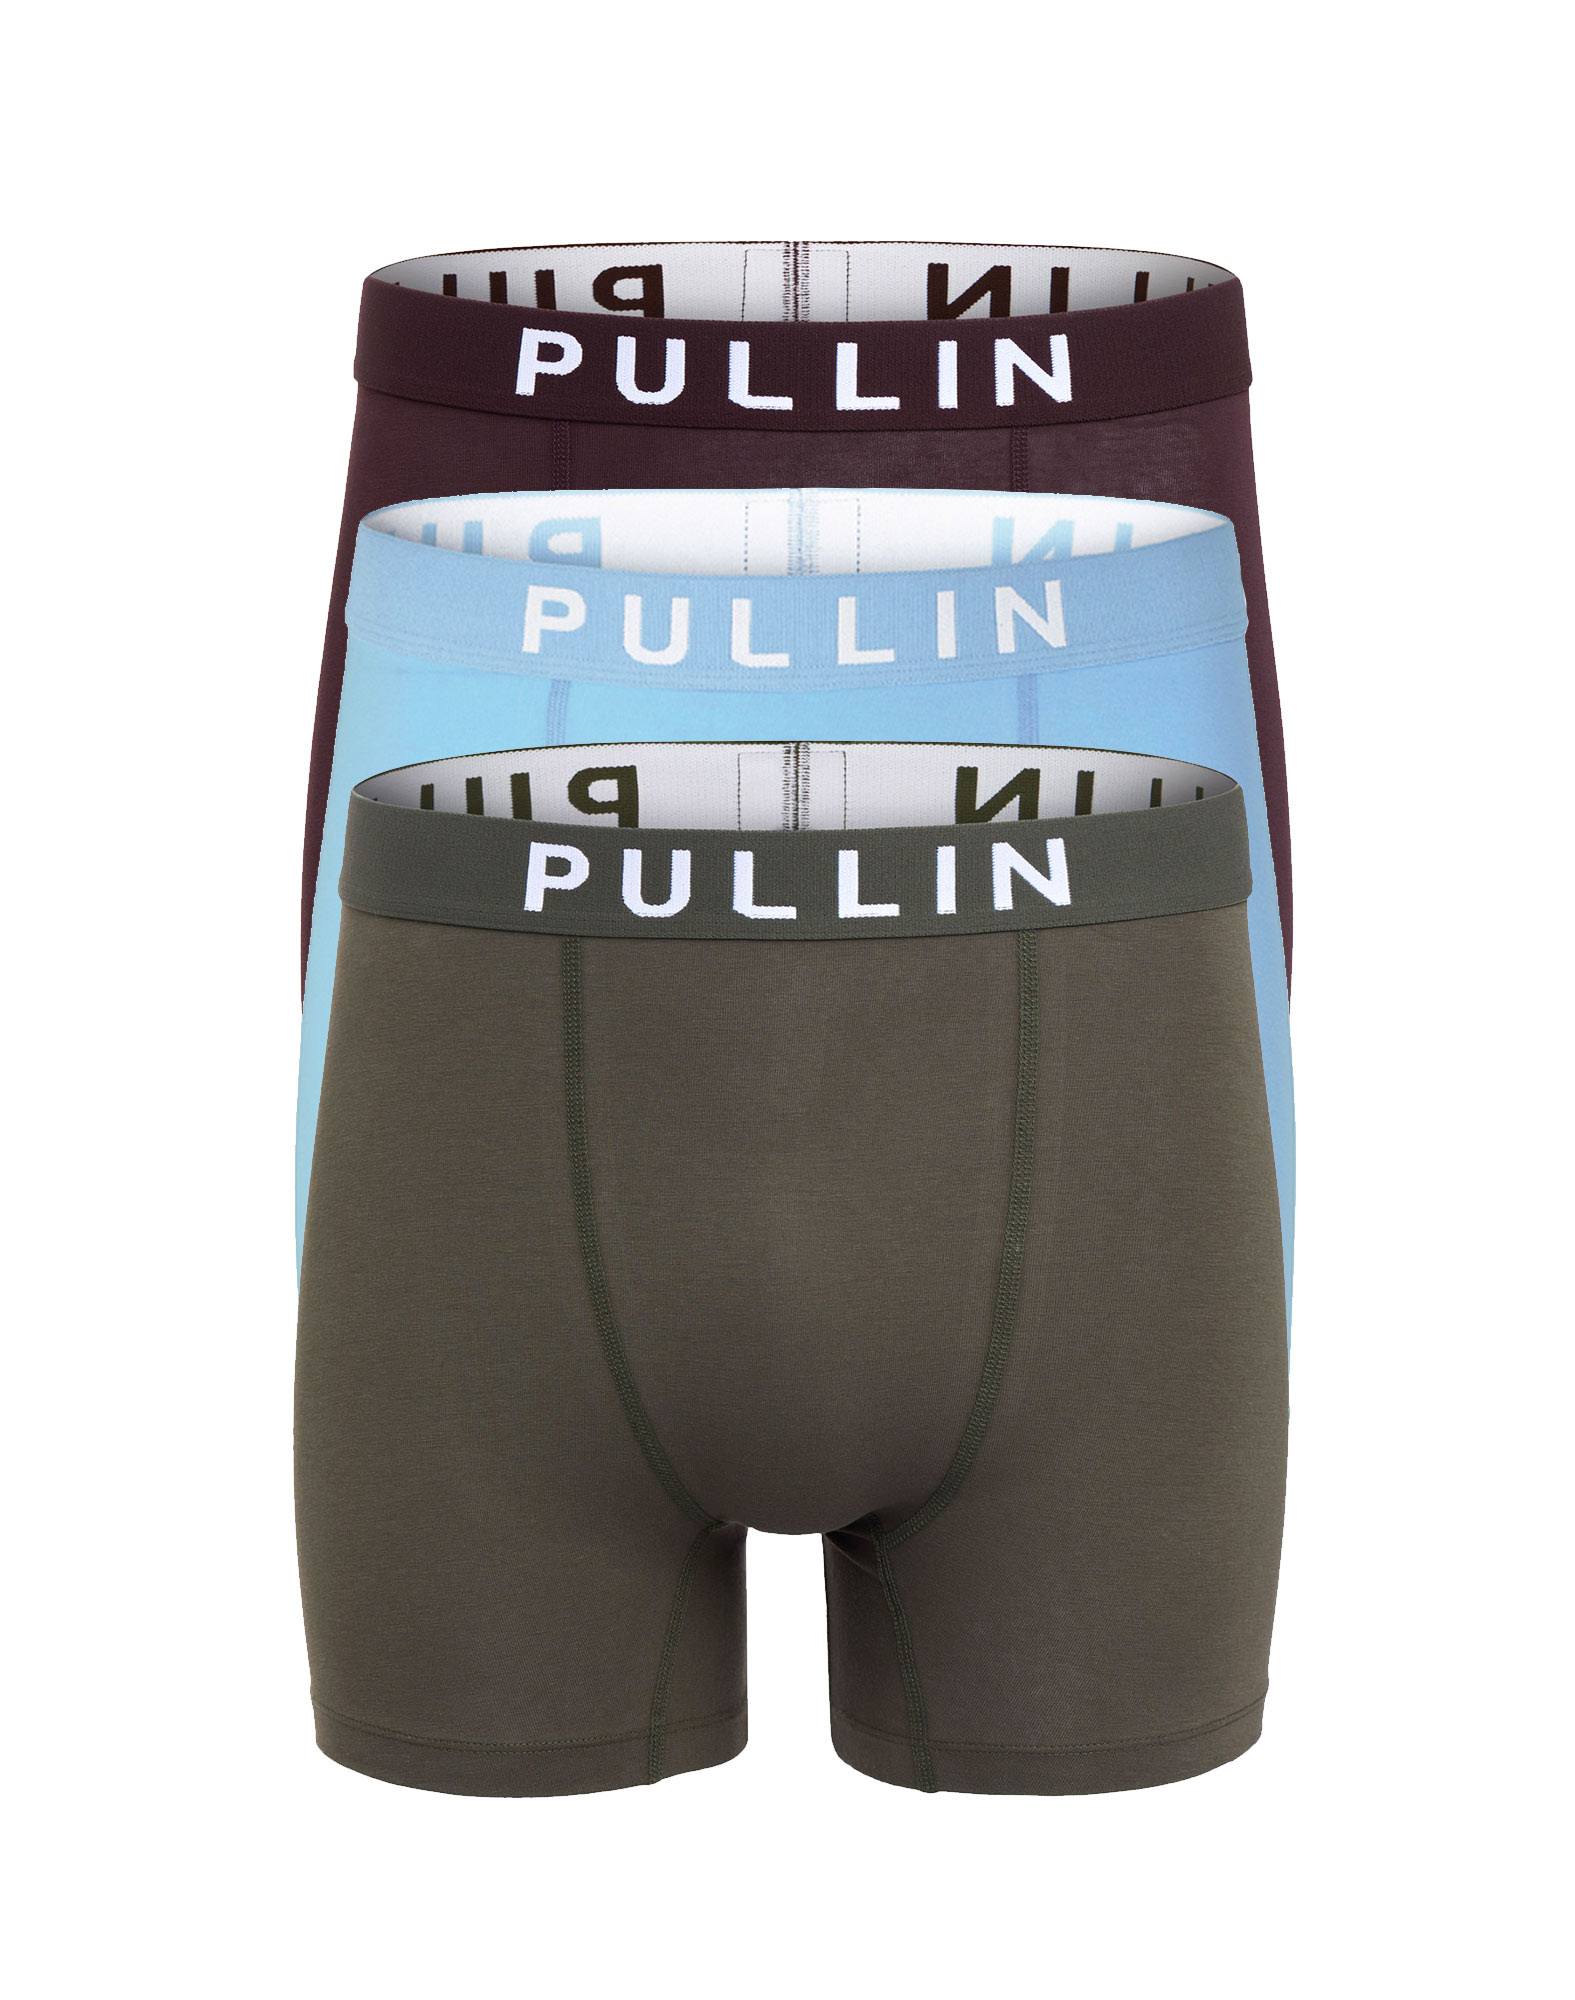 Organic cotton boxer shorts - for men - Polar Bear, cotton boxer shorts ...